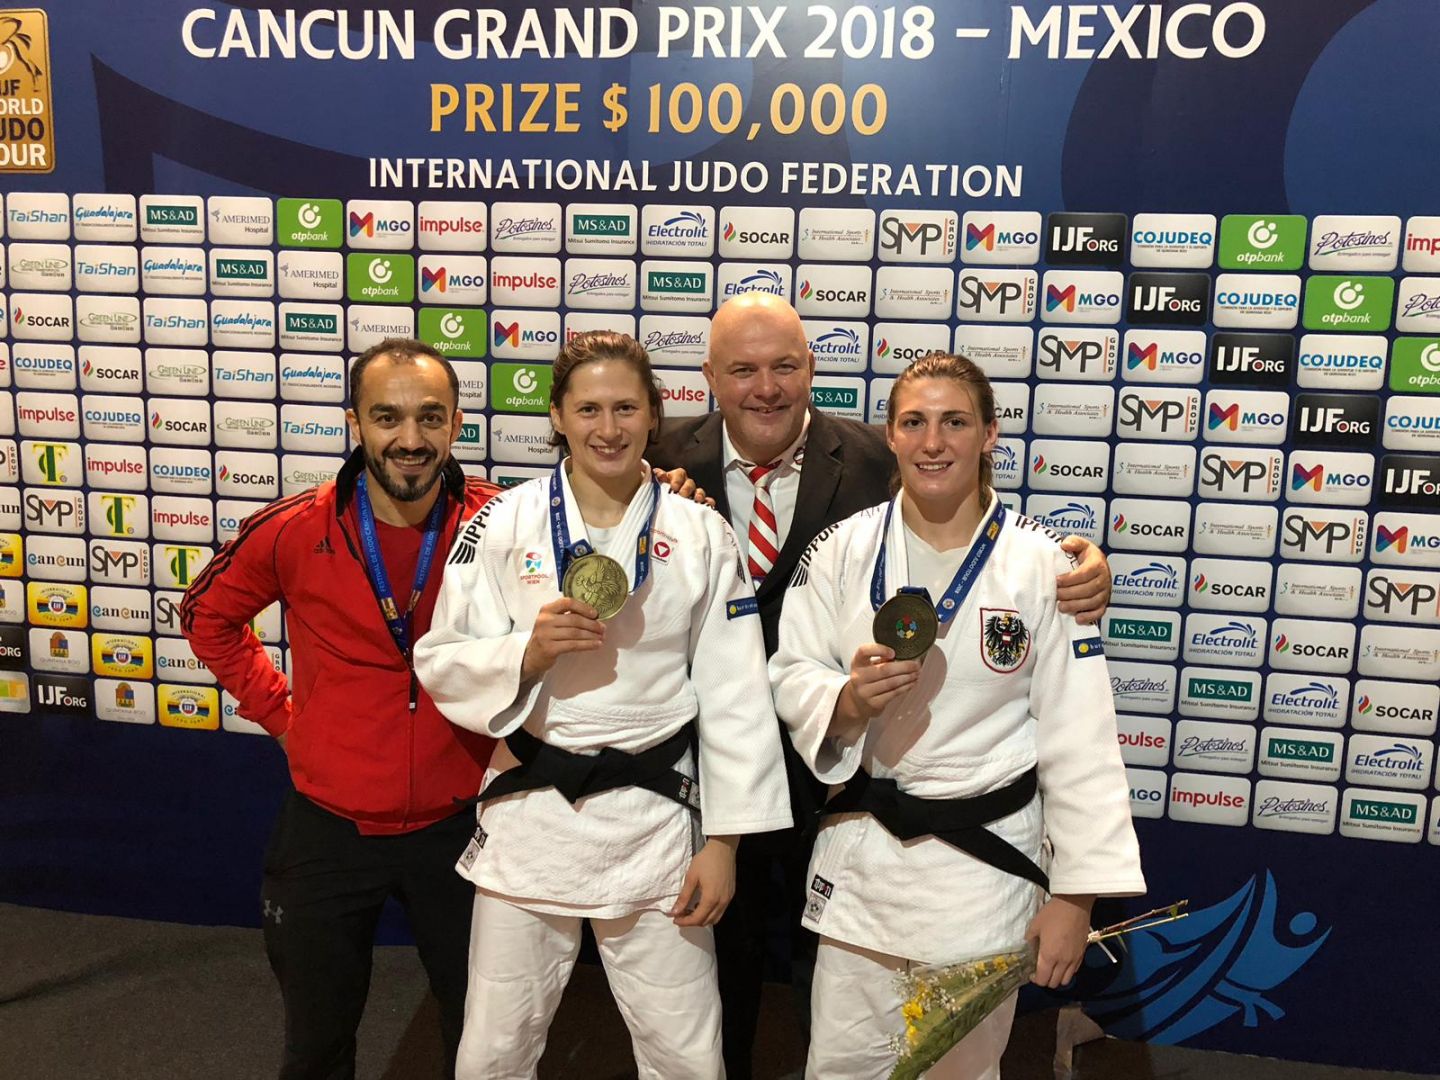 Doppelt hält besser: Krssakova und Polleres siegten in Cancun